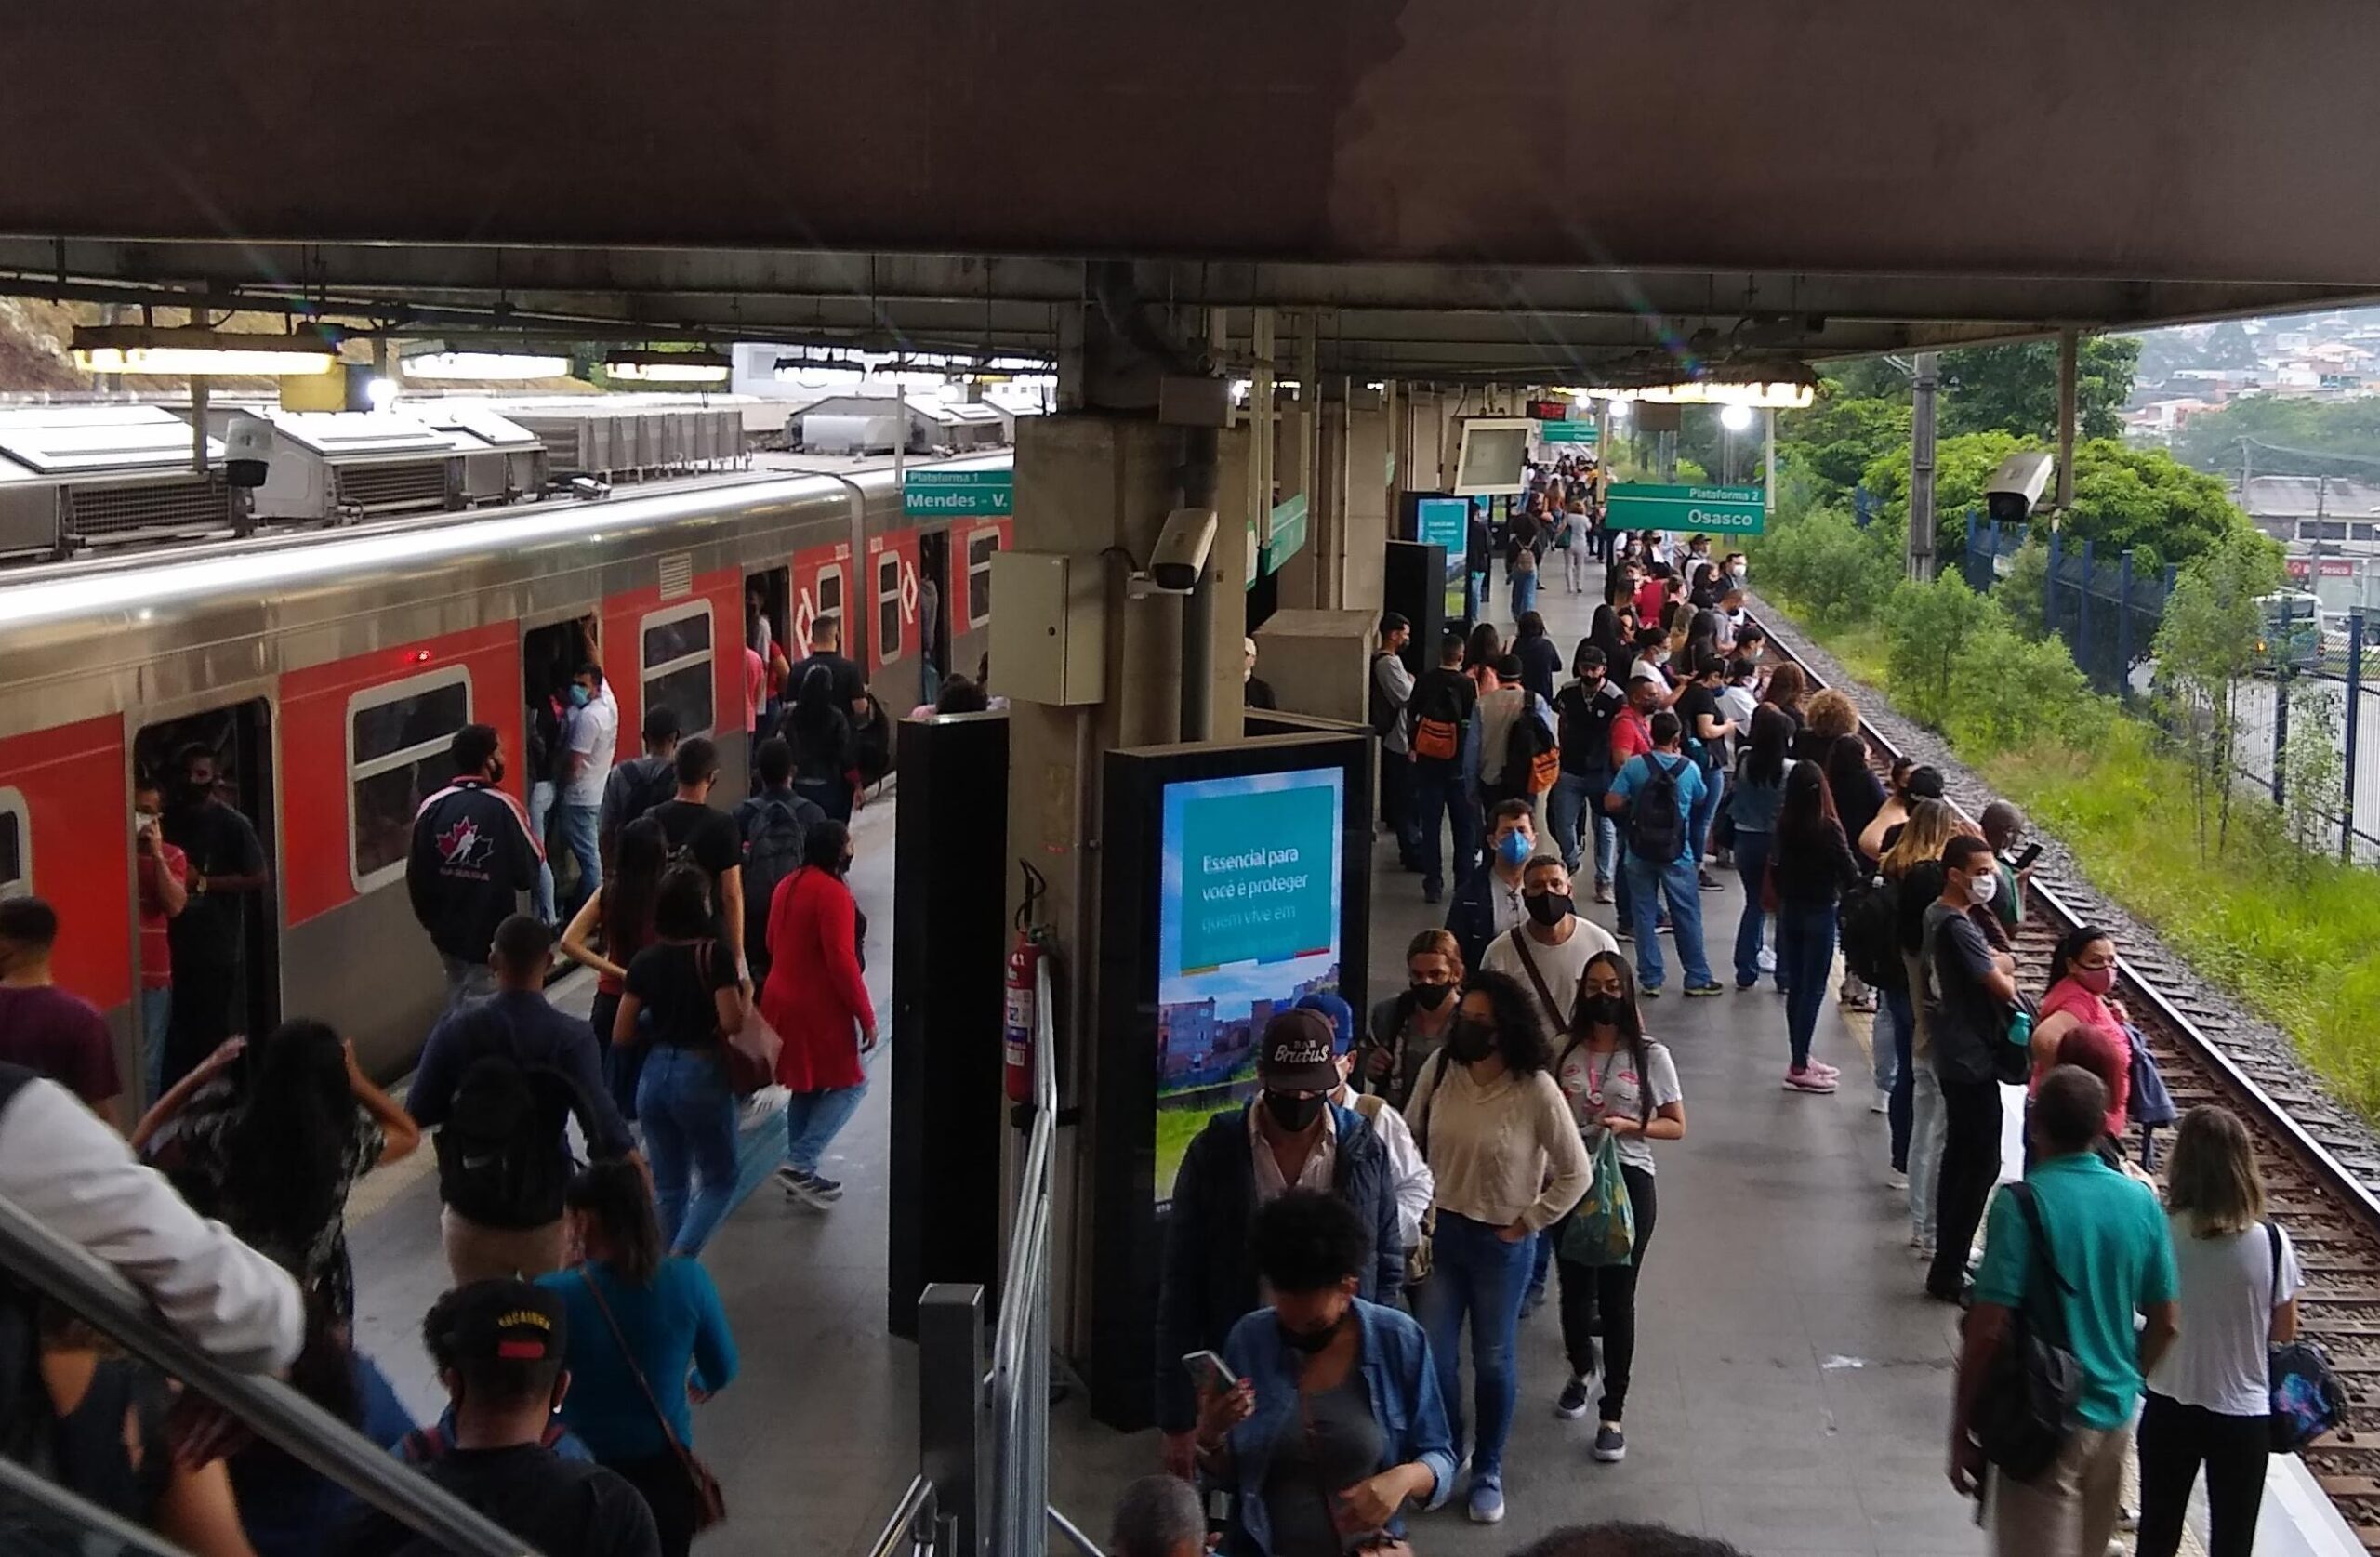 Moradores criticam demora de oito meses para operação integral da estação Vila  Natal